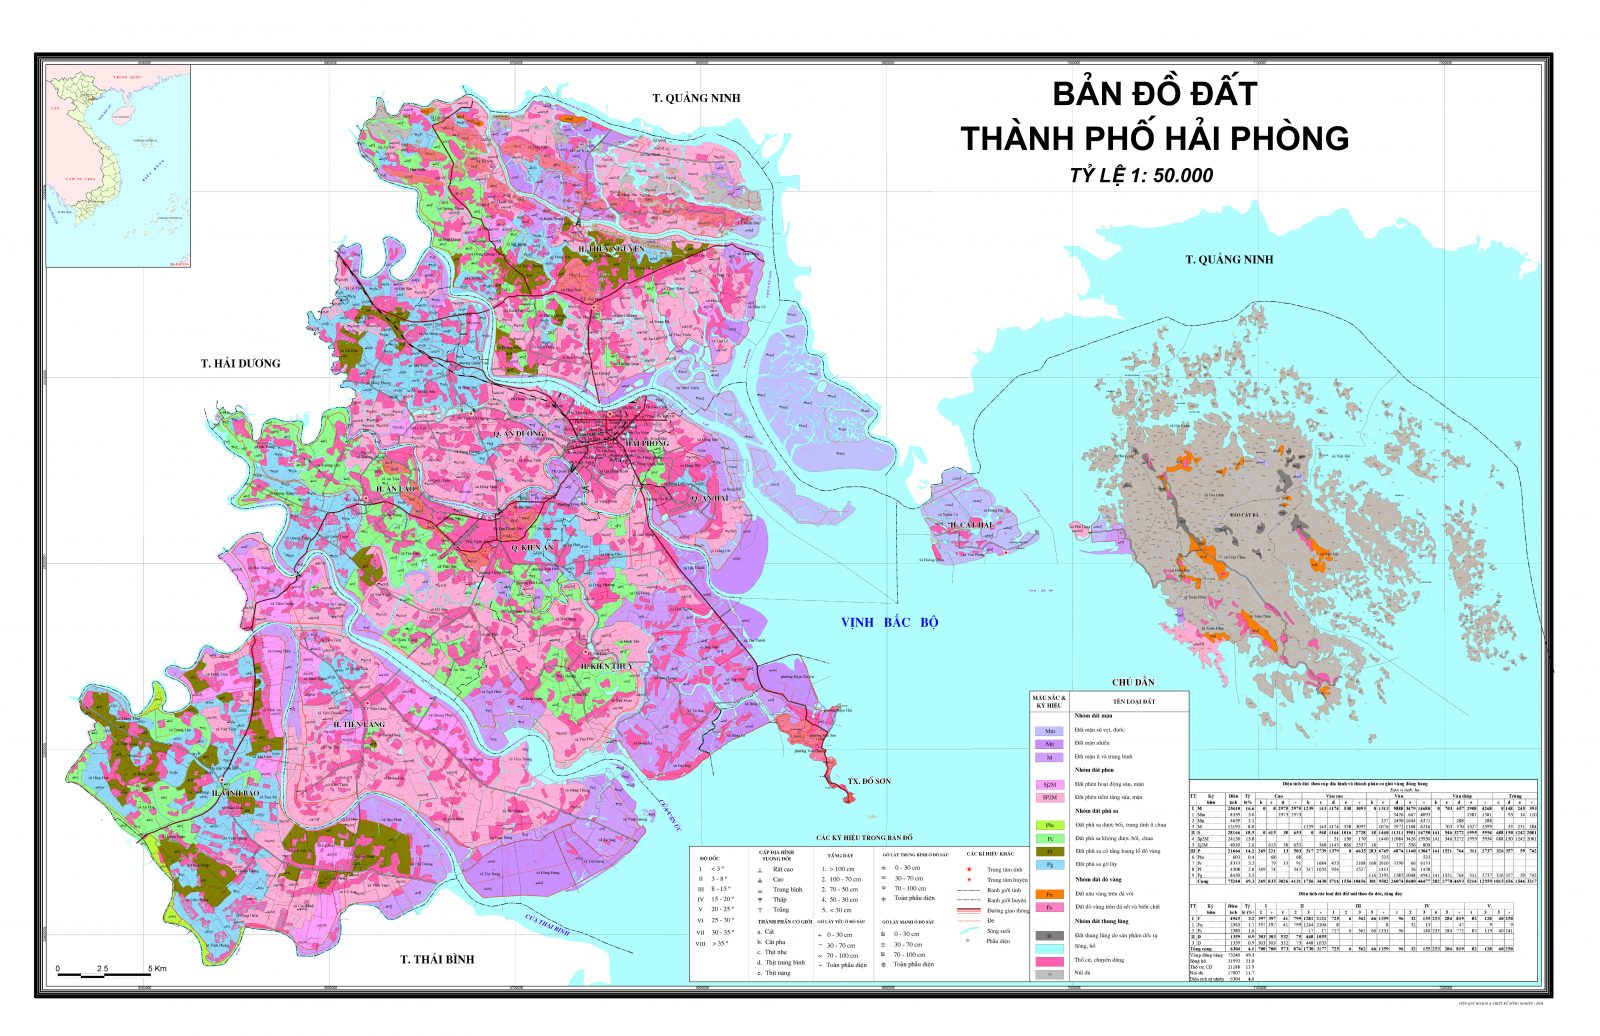 Bản đồ quy hoạch đất sử dụng đất tại thành phố Hải Phòng 